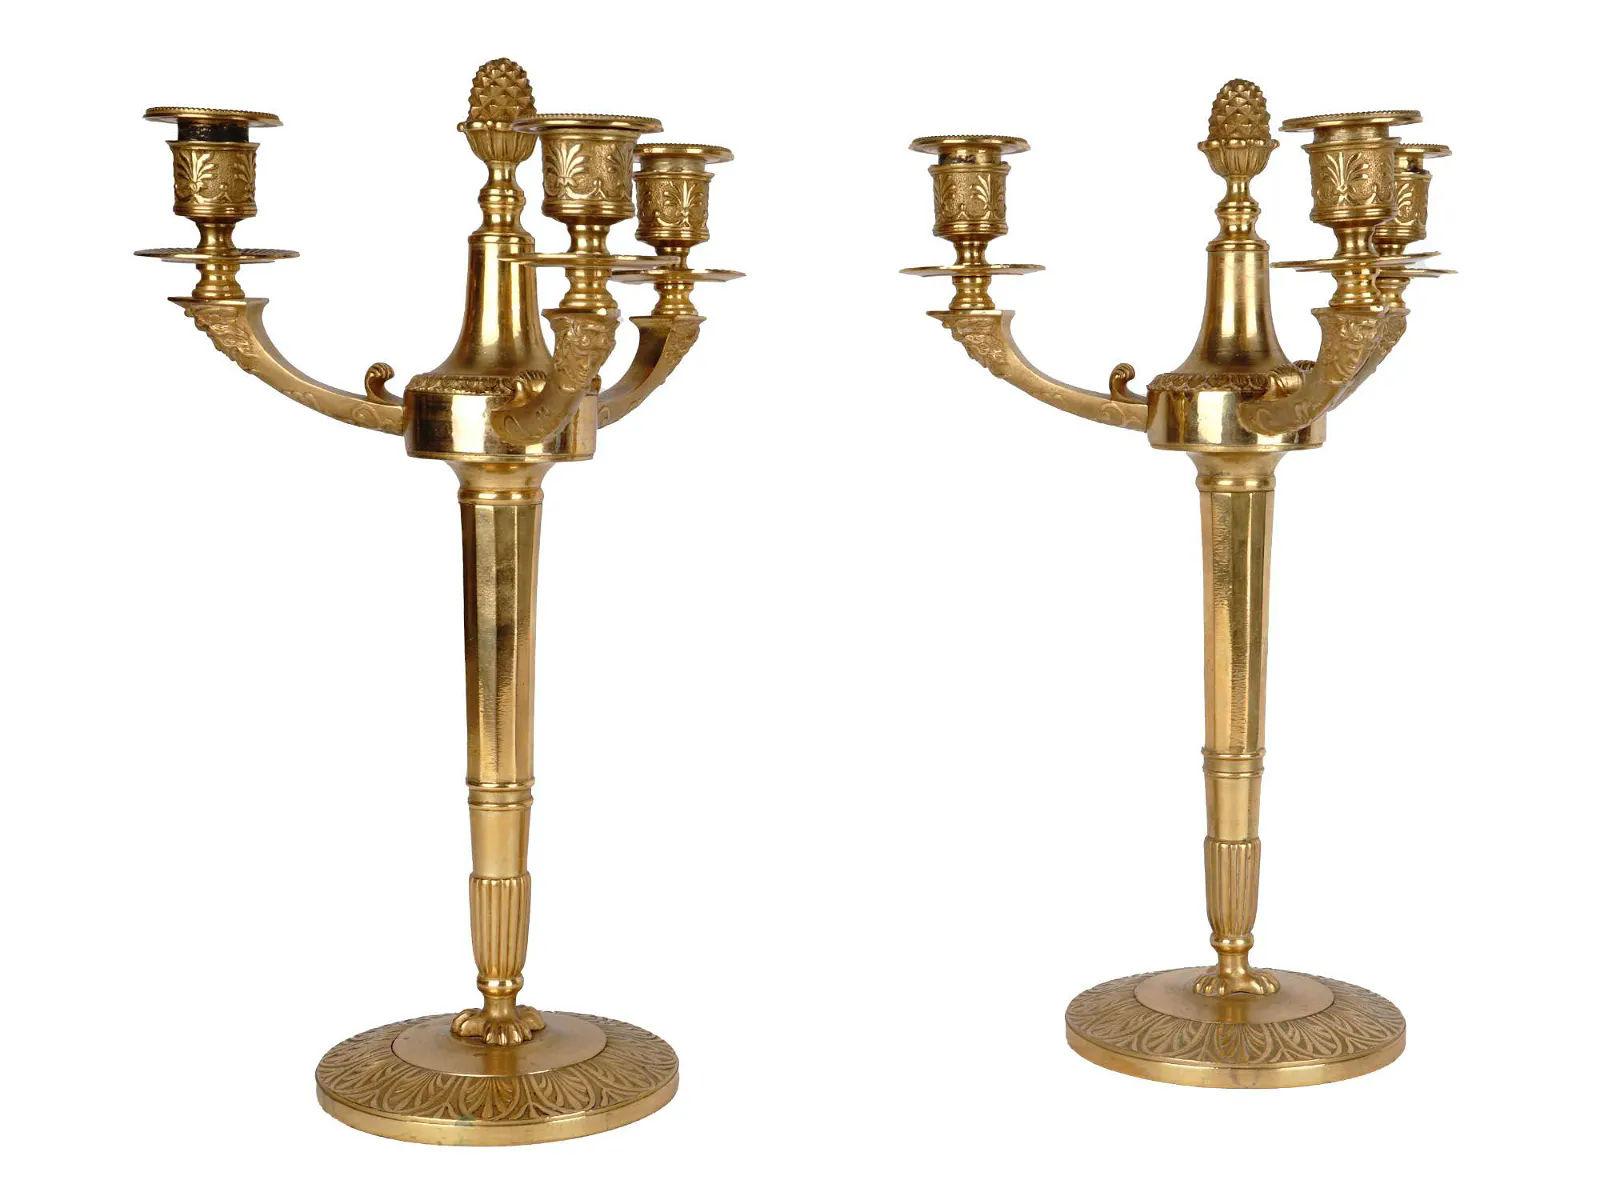 Paar außergewöhnliche französische dreiflammige Kandelaber aus vergoldeter Bronze im Empire-Stil des 19. Jahrhunderts, um 1860.  

